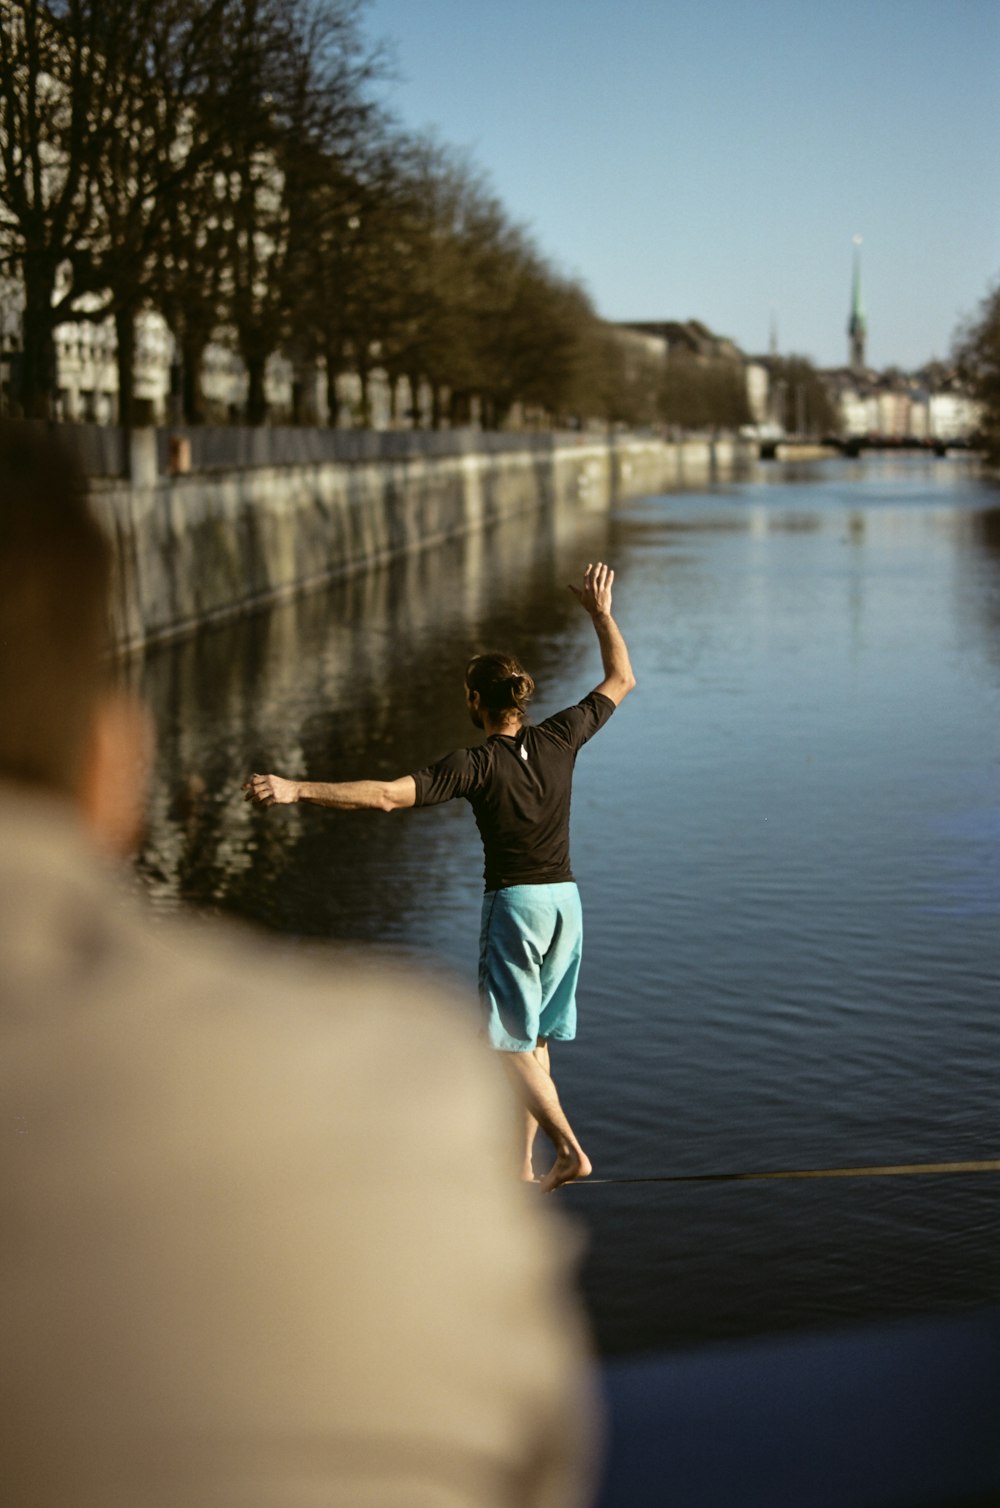 man wearing black shirt walking on rope near body of water